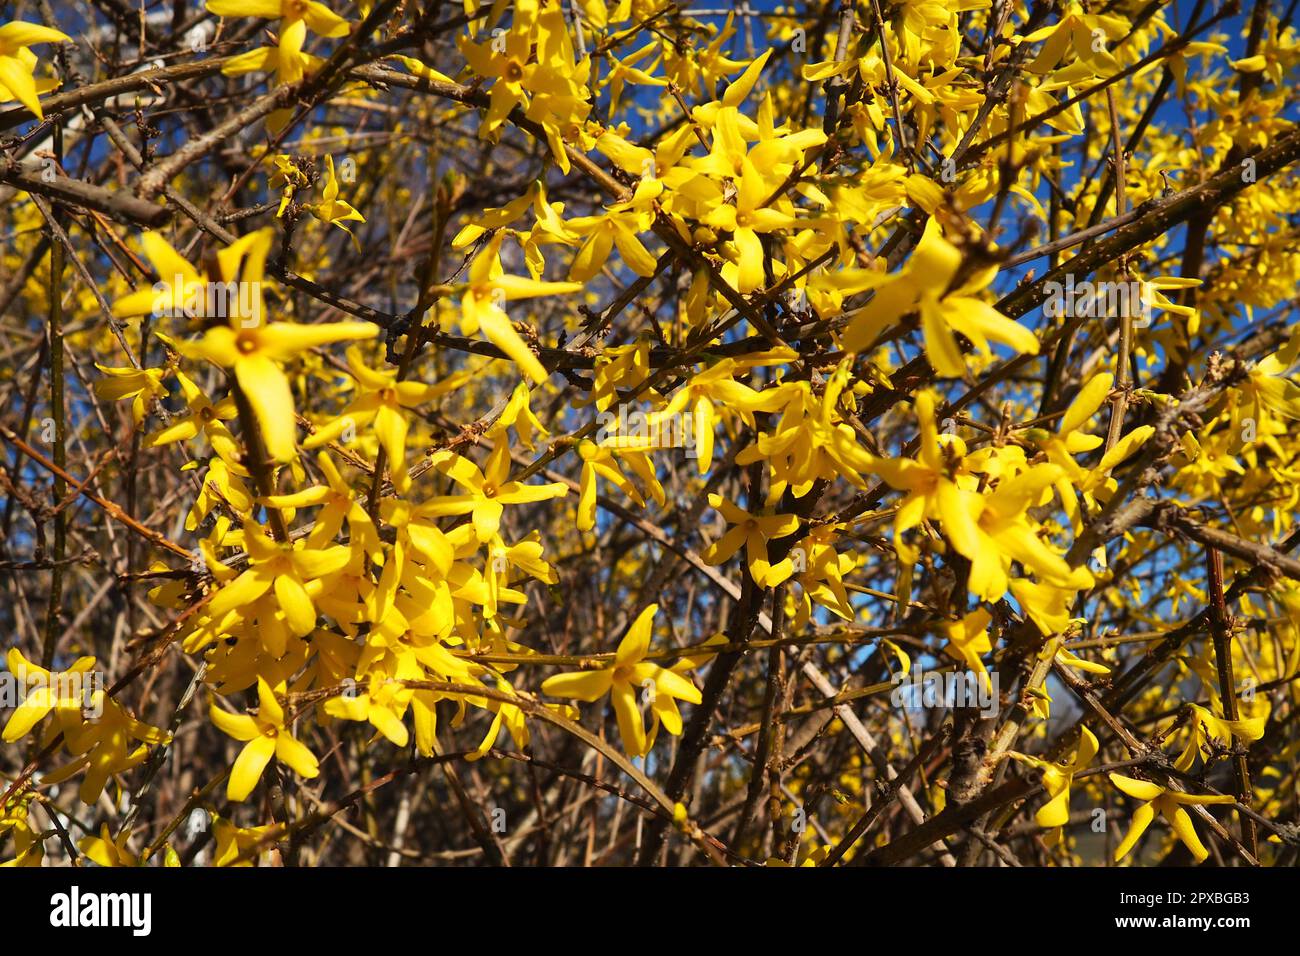 Forsythia est un genre d'arbustes et de petits arbres de la famille des oliviers. Nombreuses fleurs jaunes sur les branches et les pousses. Classe Dicotyledonous Order Lamiace Banque D'Images